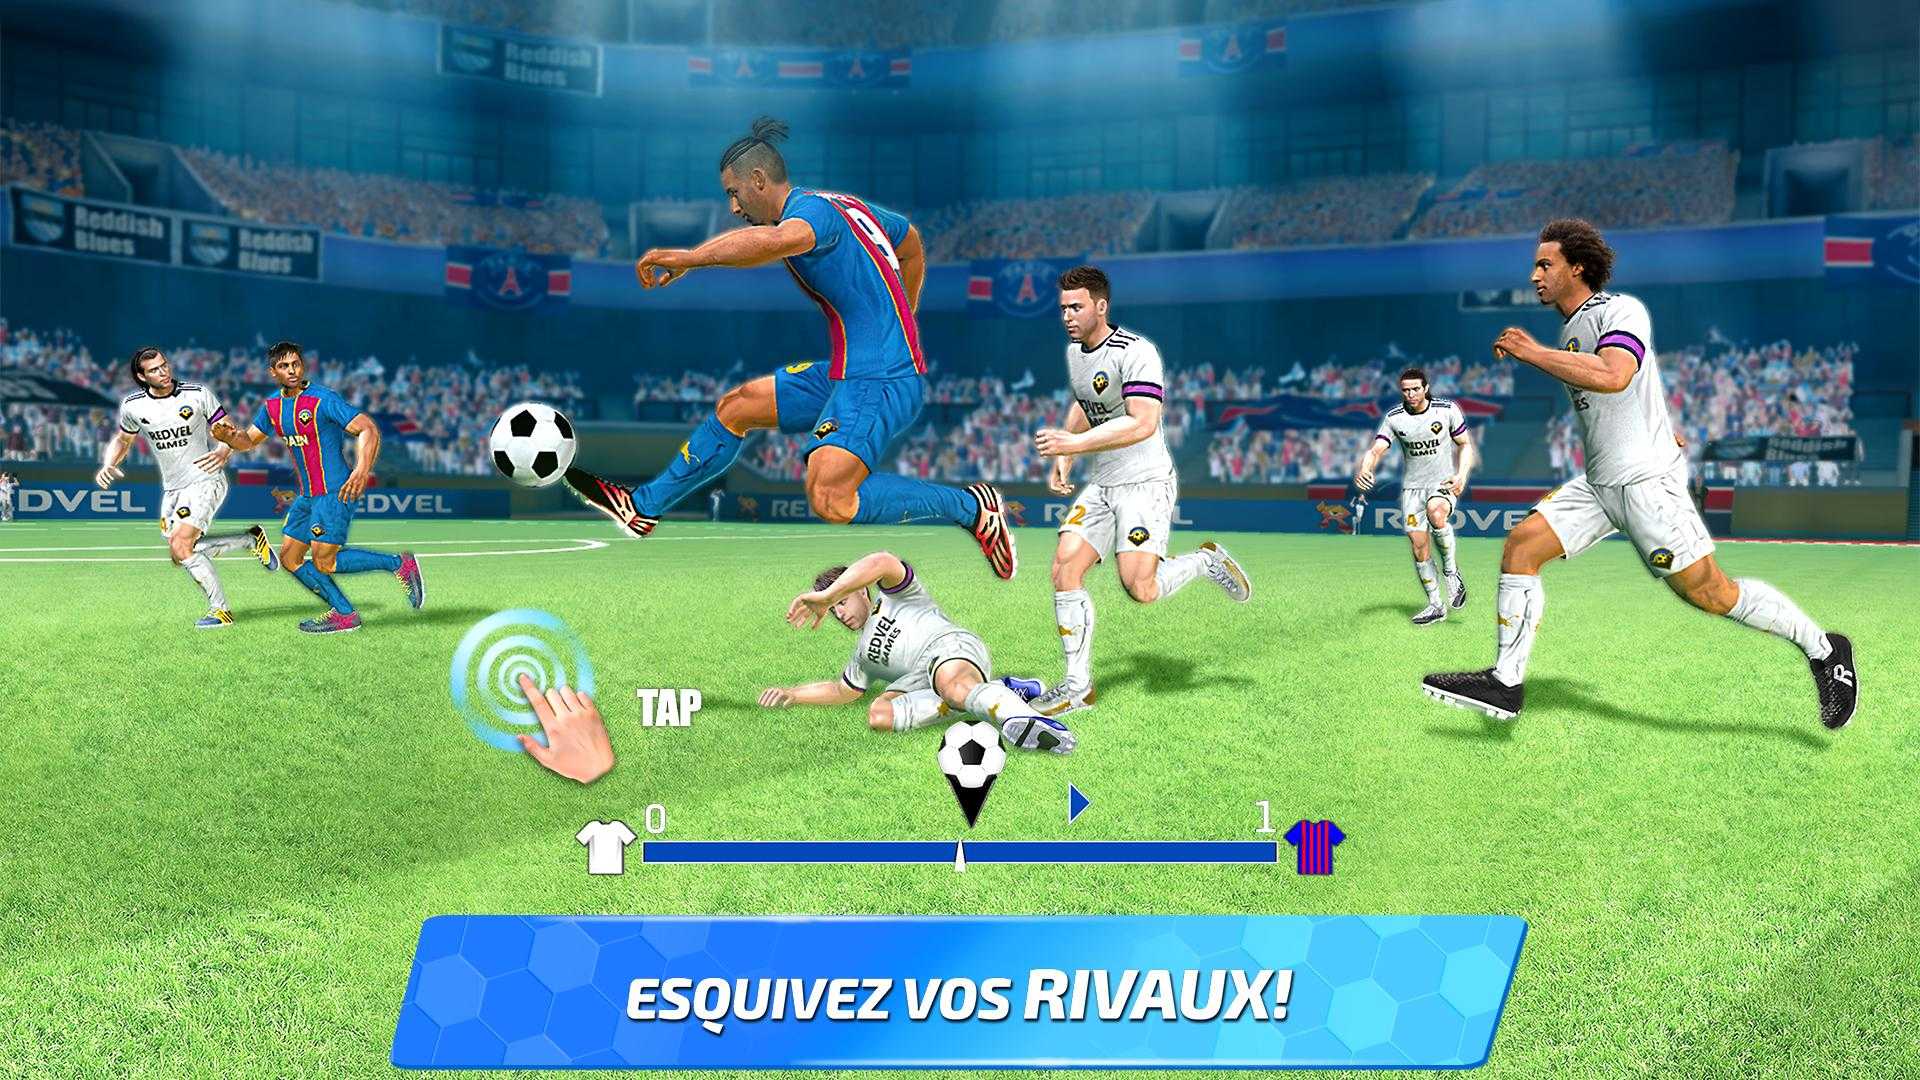 Soccer Star 2020 Football Cards: The soccer v1.3.0 (Mod) Apk